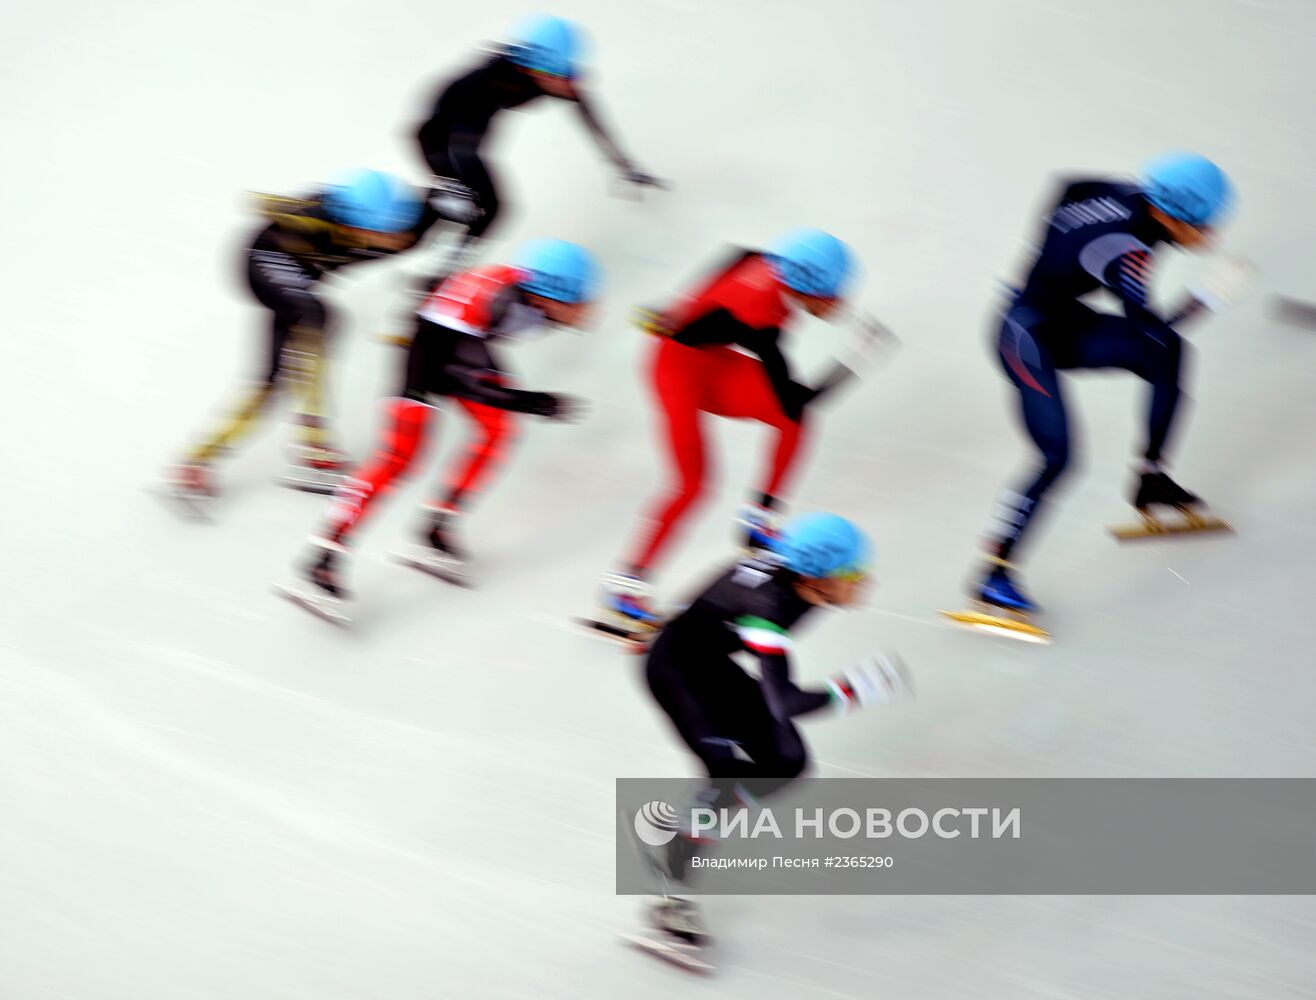 Олимпиада 2014. Шорт-трек. Женщины. 500 метров. Предварительные заезды